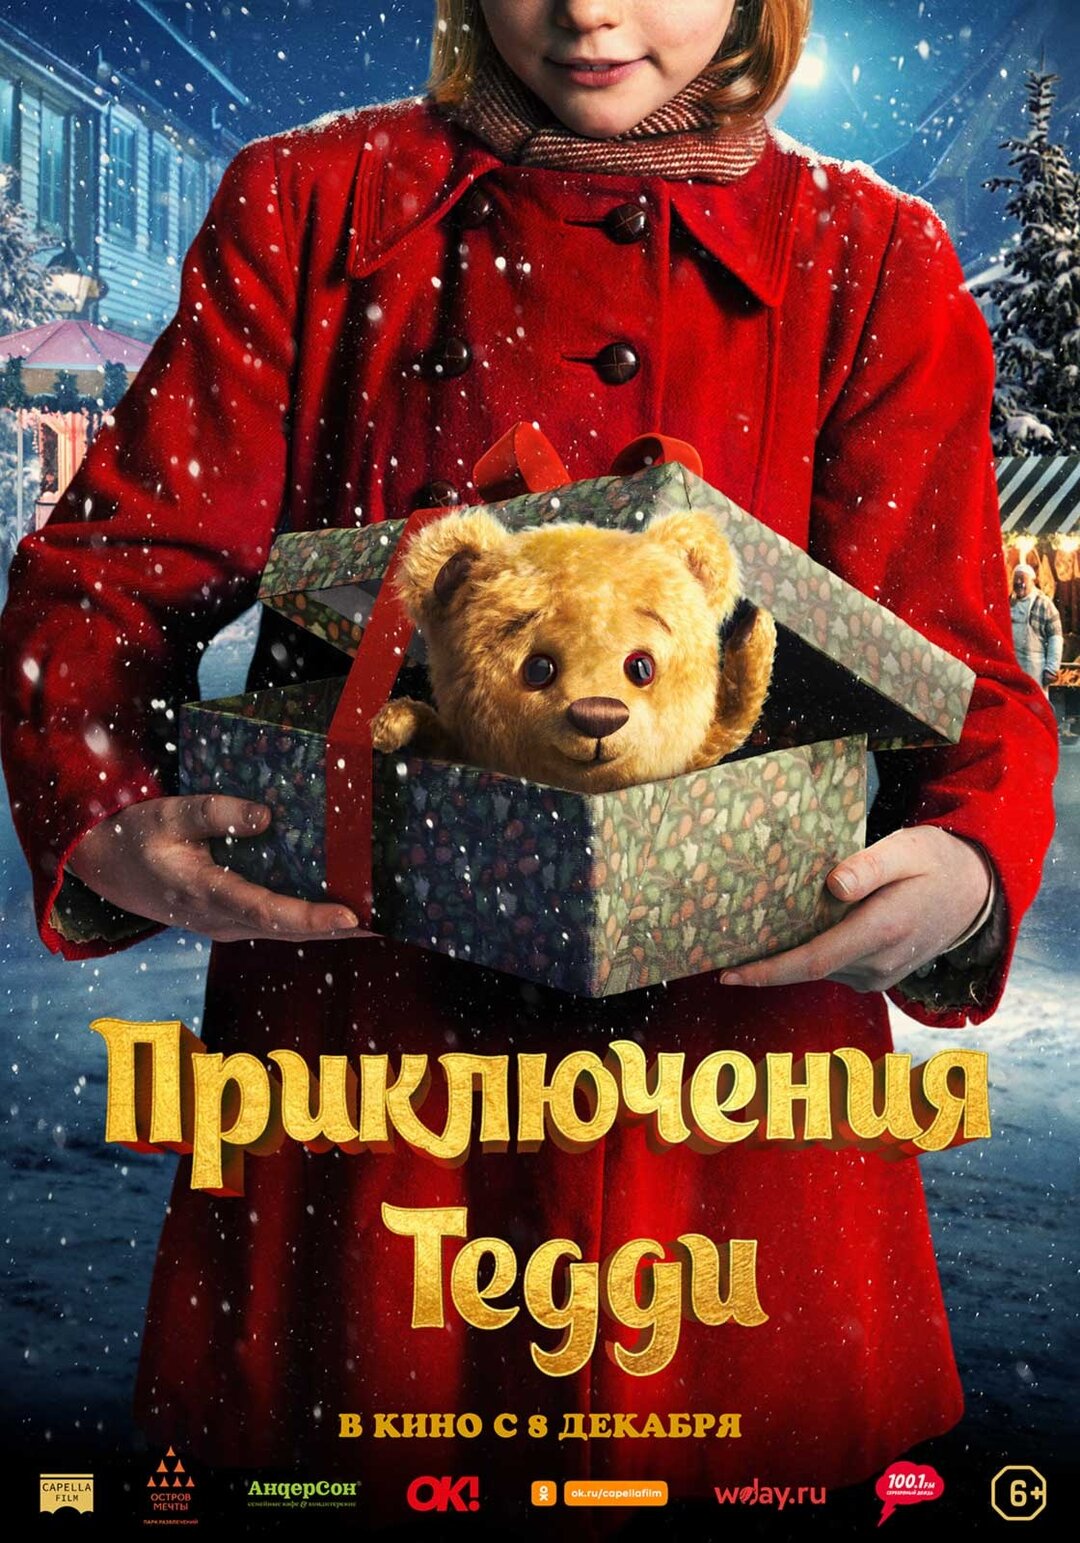 Обложка к картине "Приключения Тедди"